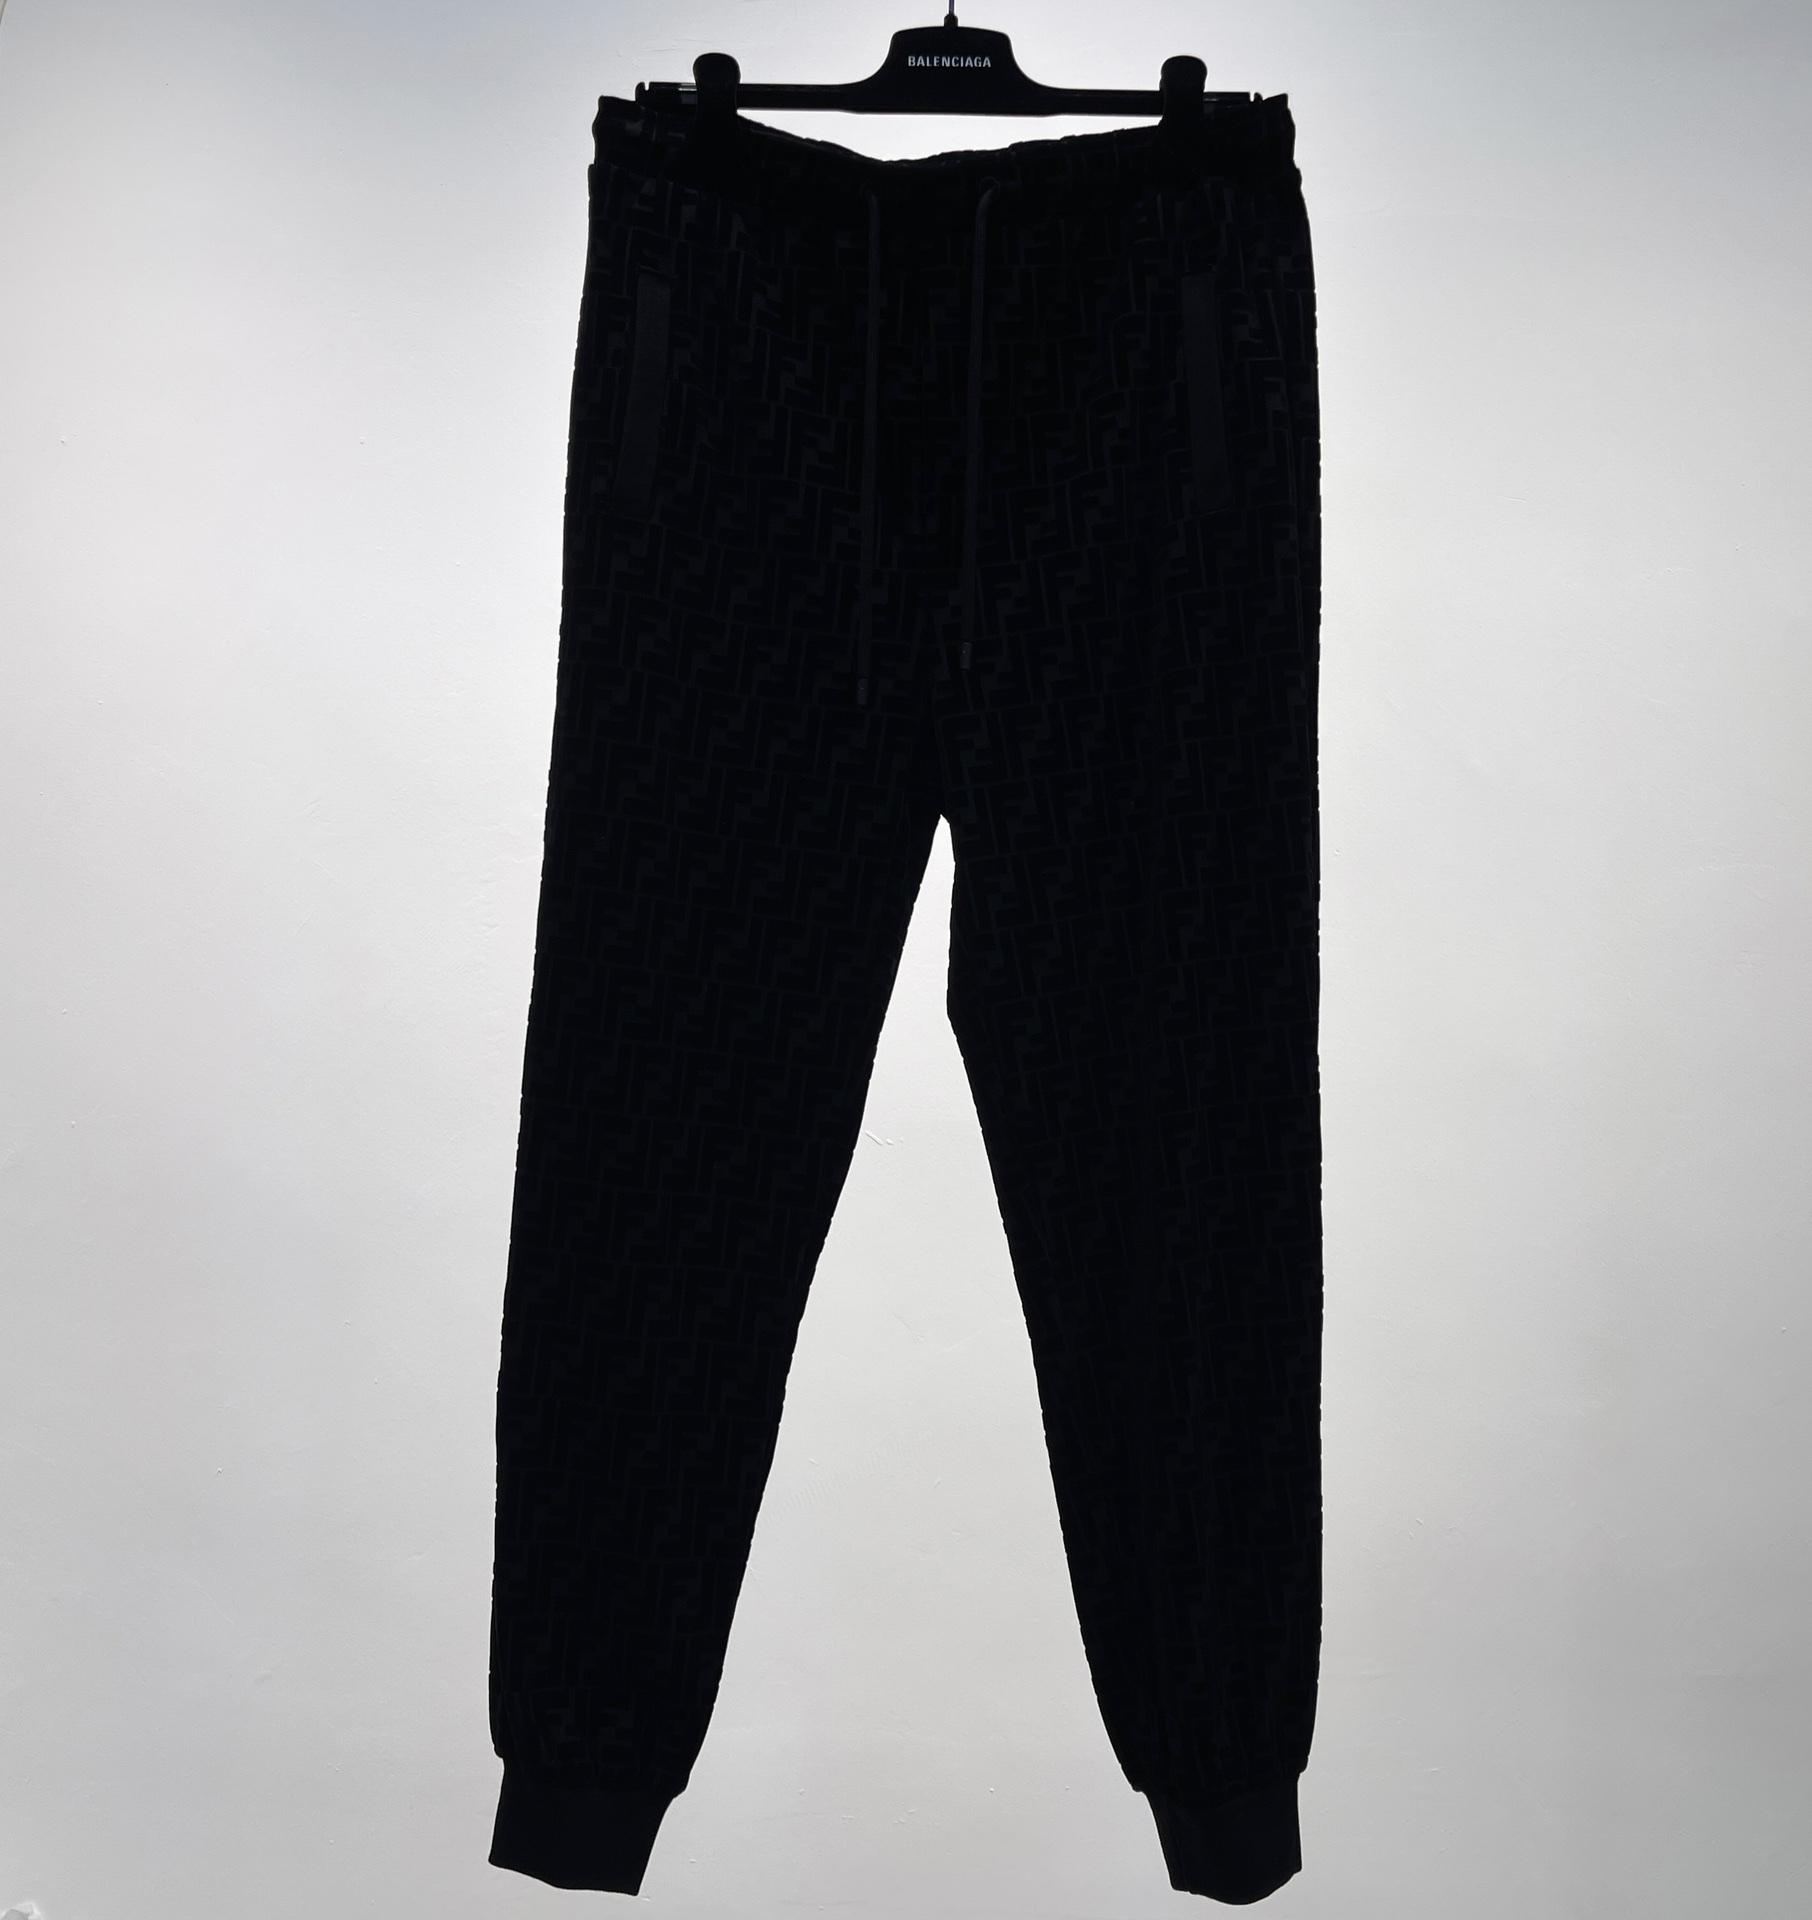 black-pique-trousers-4857_16845004522-1000